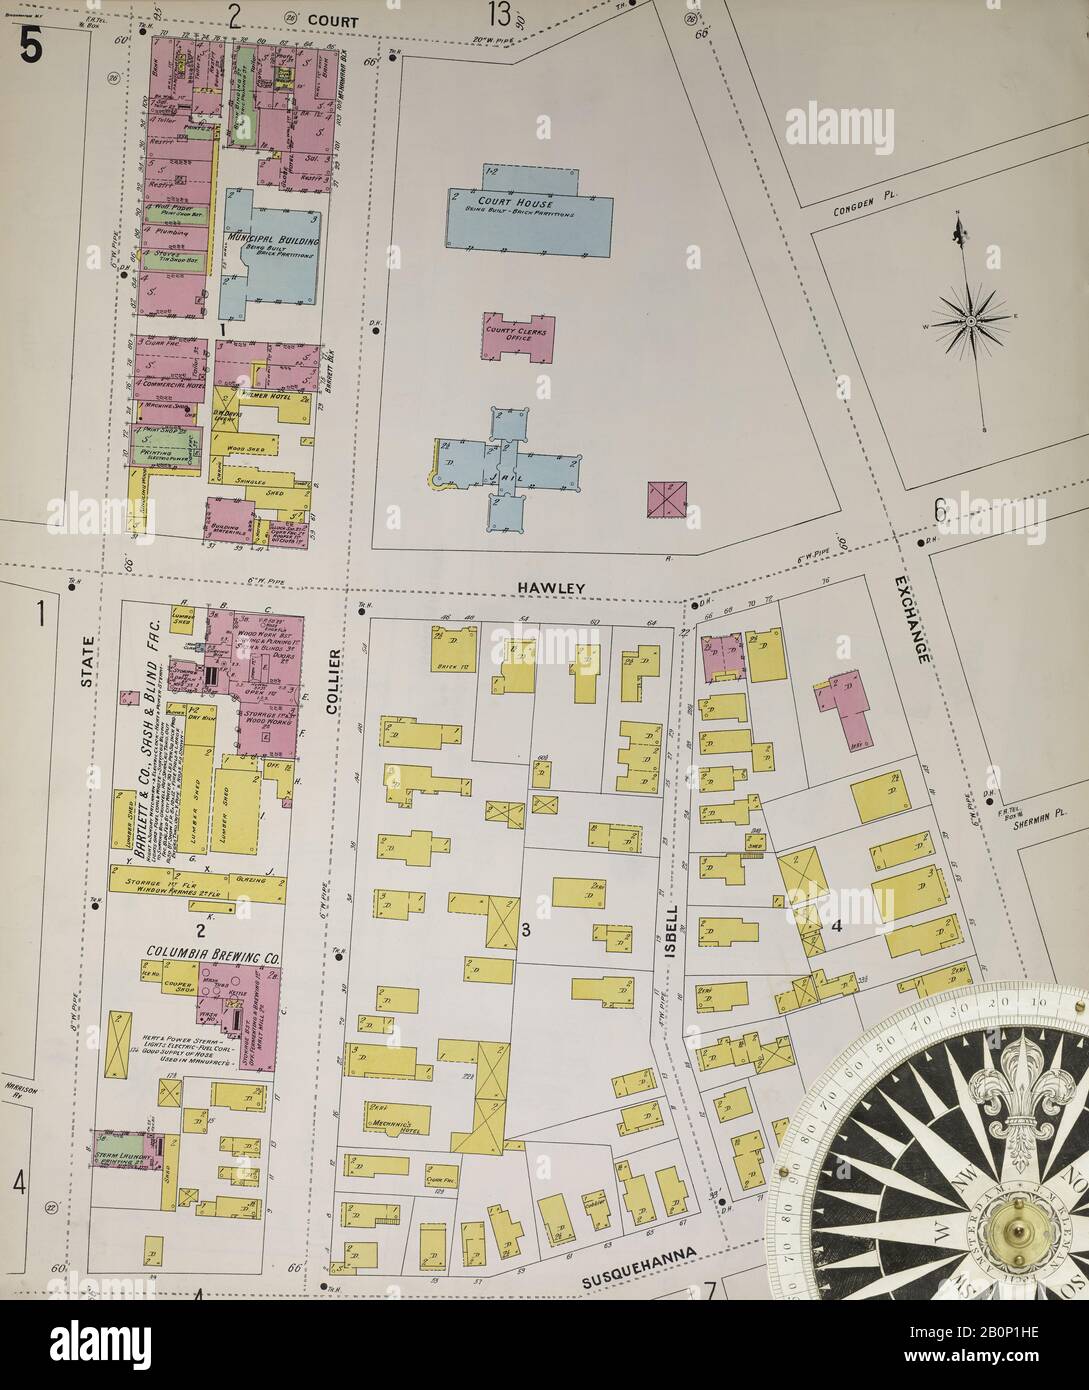 Bild 8 von Sanborn Fire Insurance Map aus Binghamton, Broome County, New York. 1898. 75 Blatt(e). 4 Skelettkarten. Bound, Amerika, Straßenkarte mit einem Kompass Aus Dem 19. Jahrhundert Stockfoto